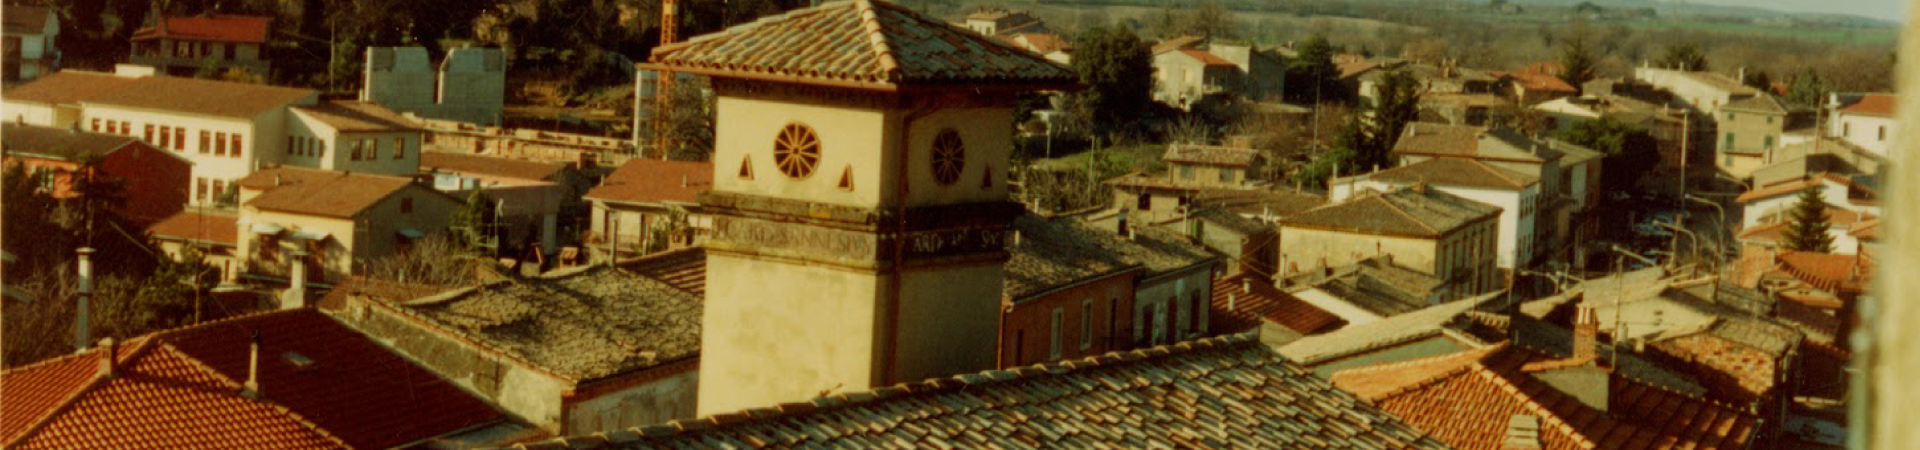 Castel-Giorgio